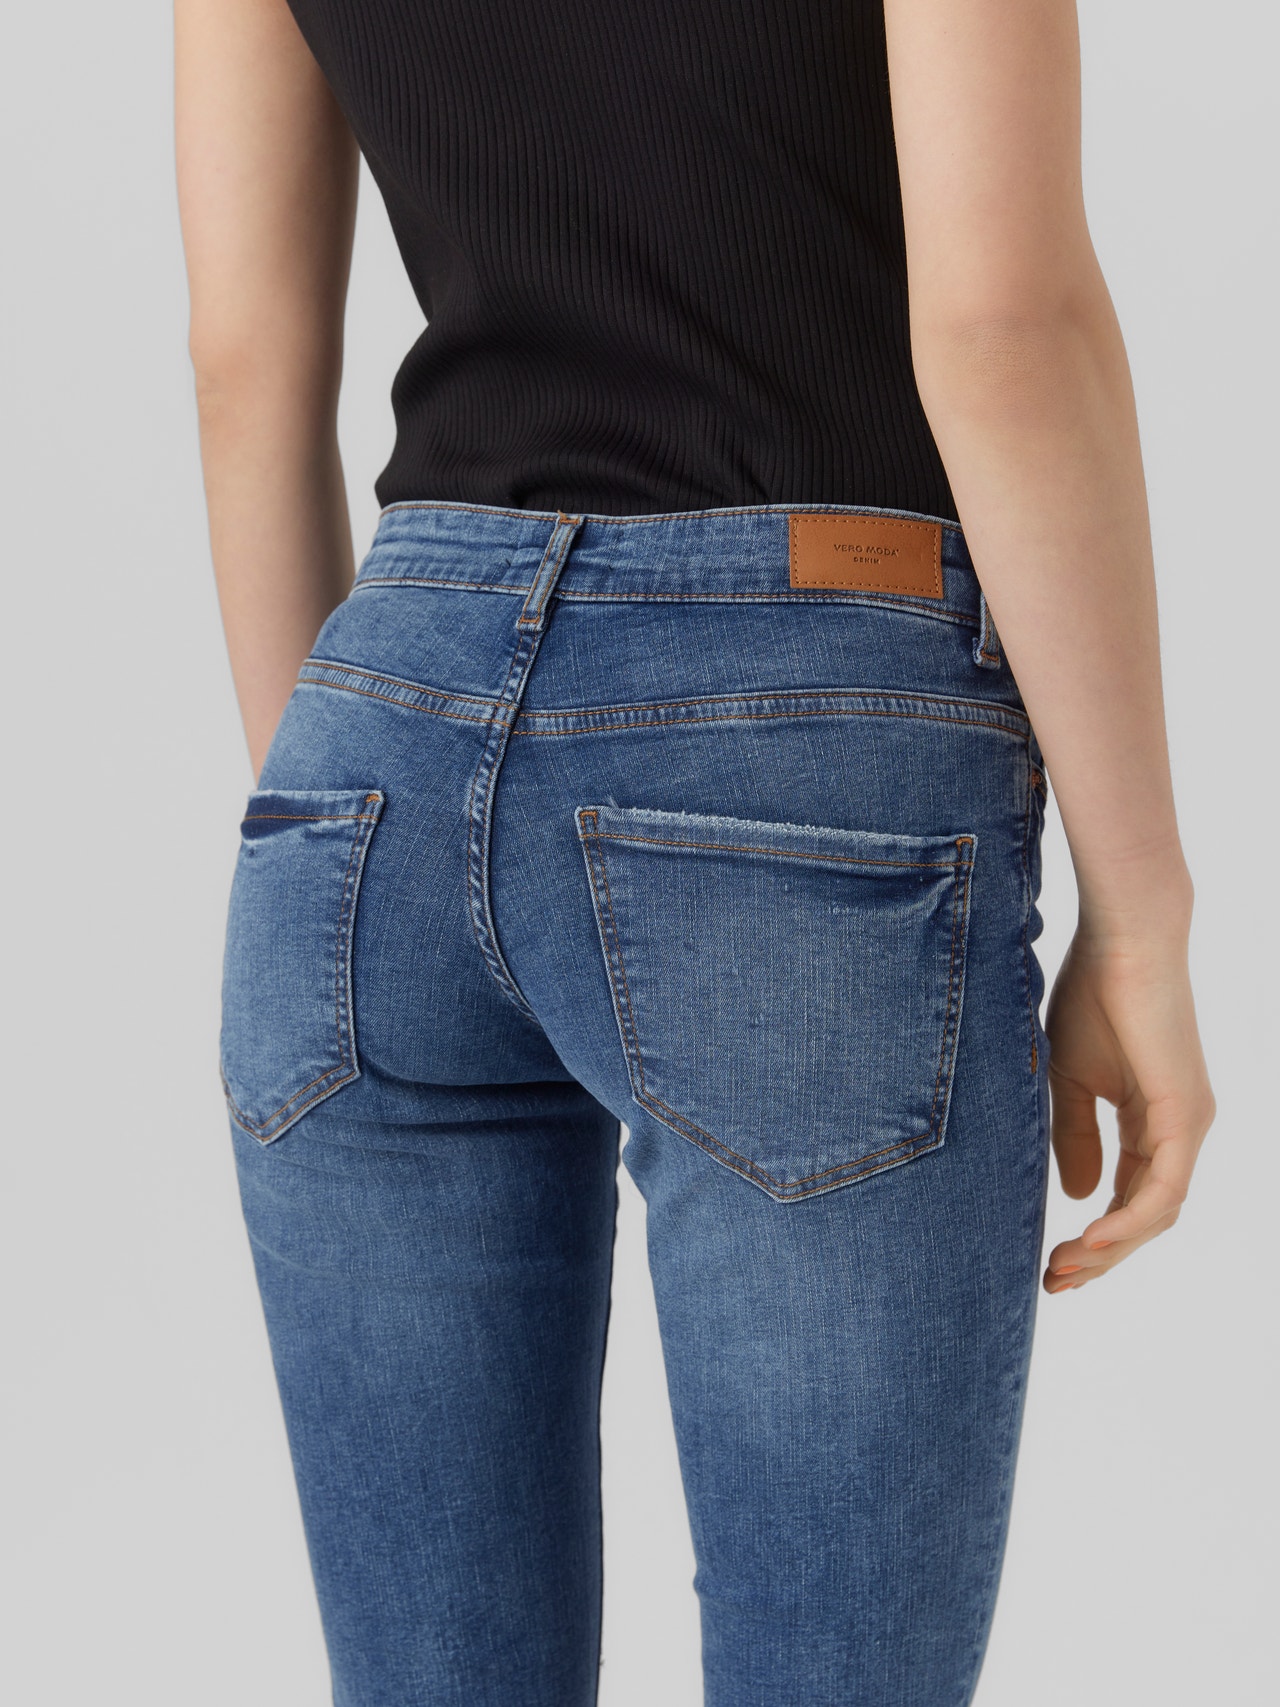 Gensidig Kosciuszko trekant VMSIGI lav talje jeans | Mellemblå | Vero Moda®